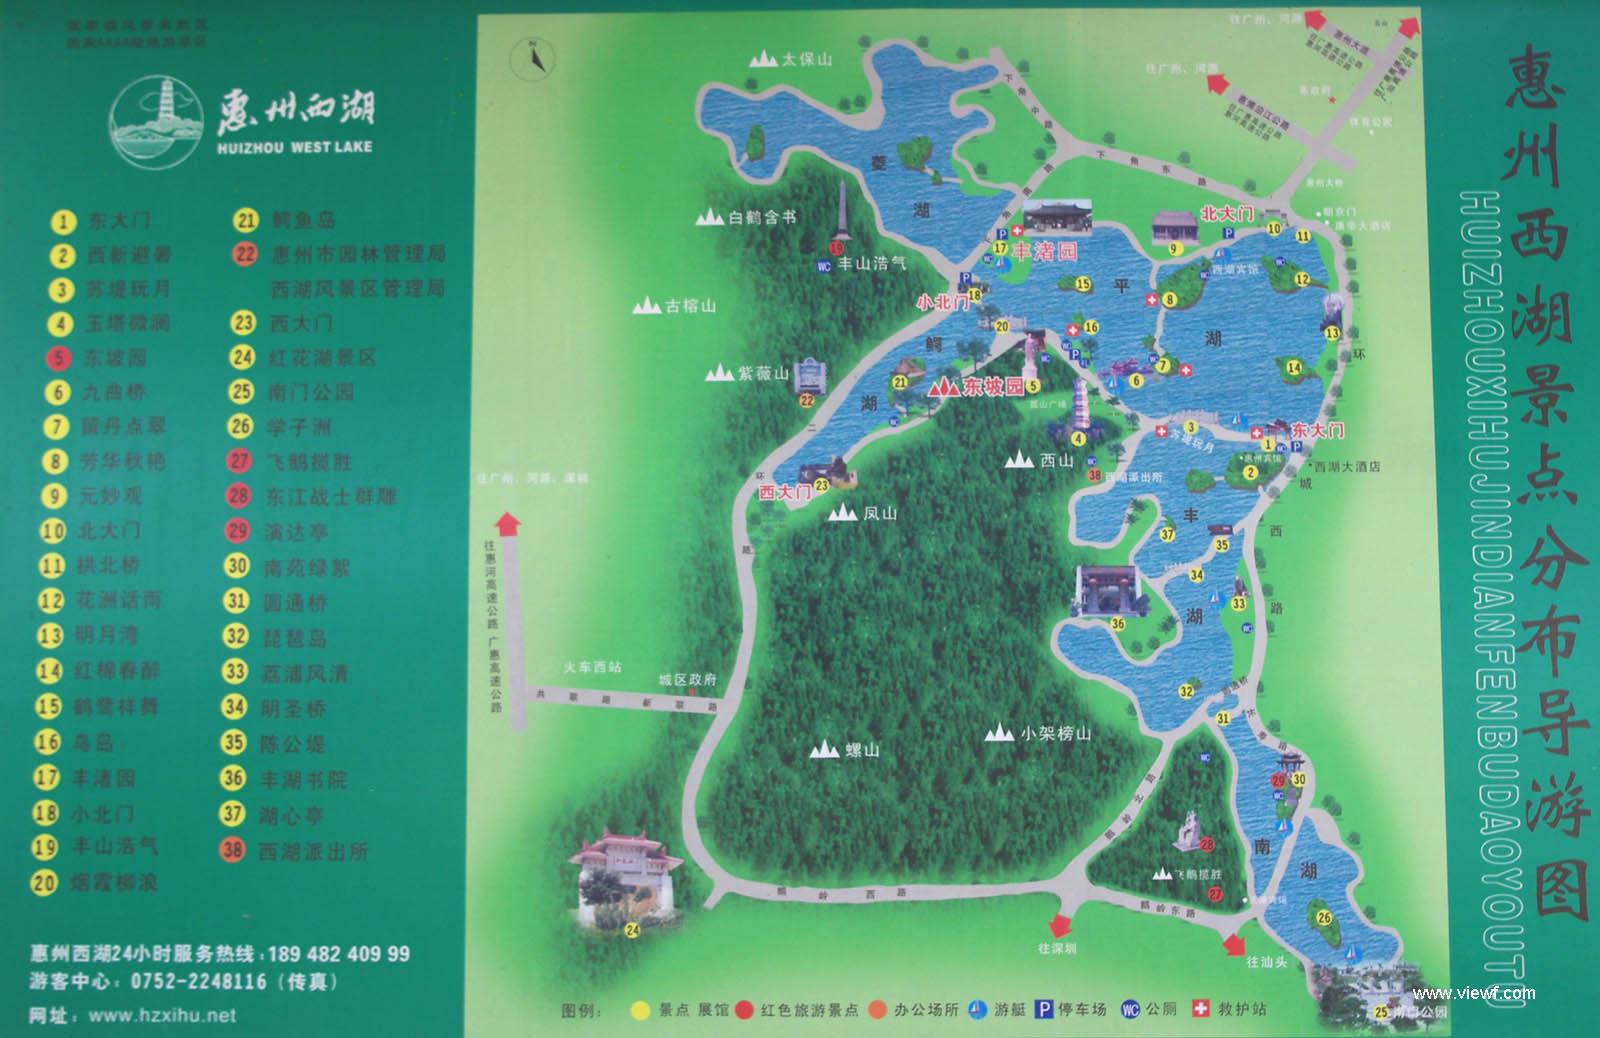 惠州市行政区划图高清,惠州地图区域划分 - 伤感说说吧